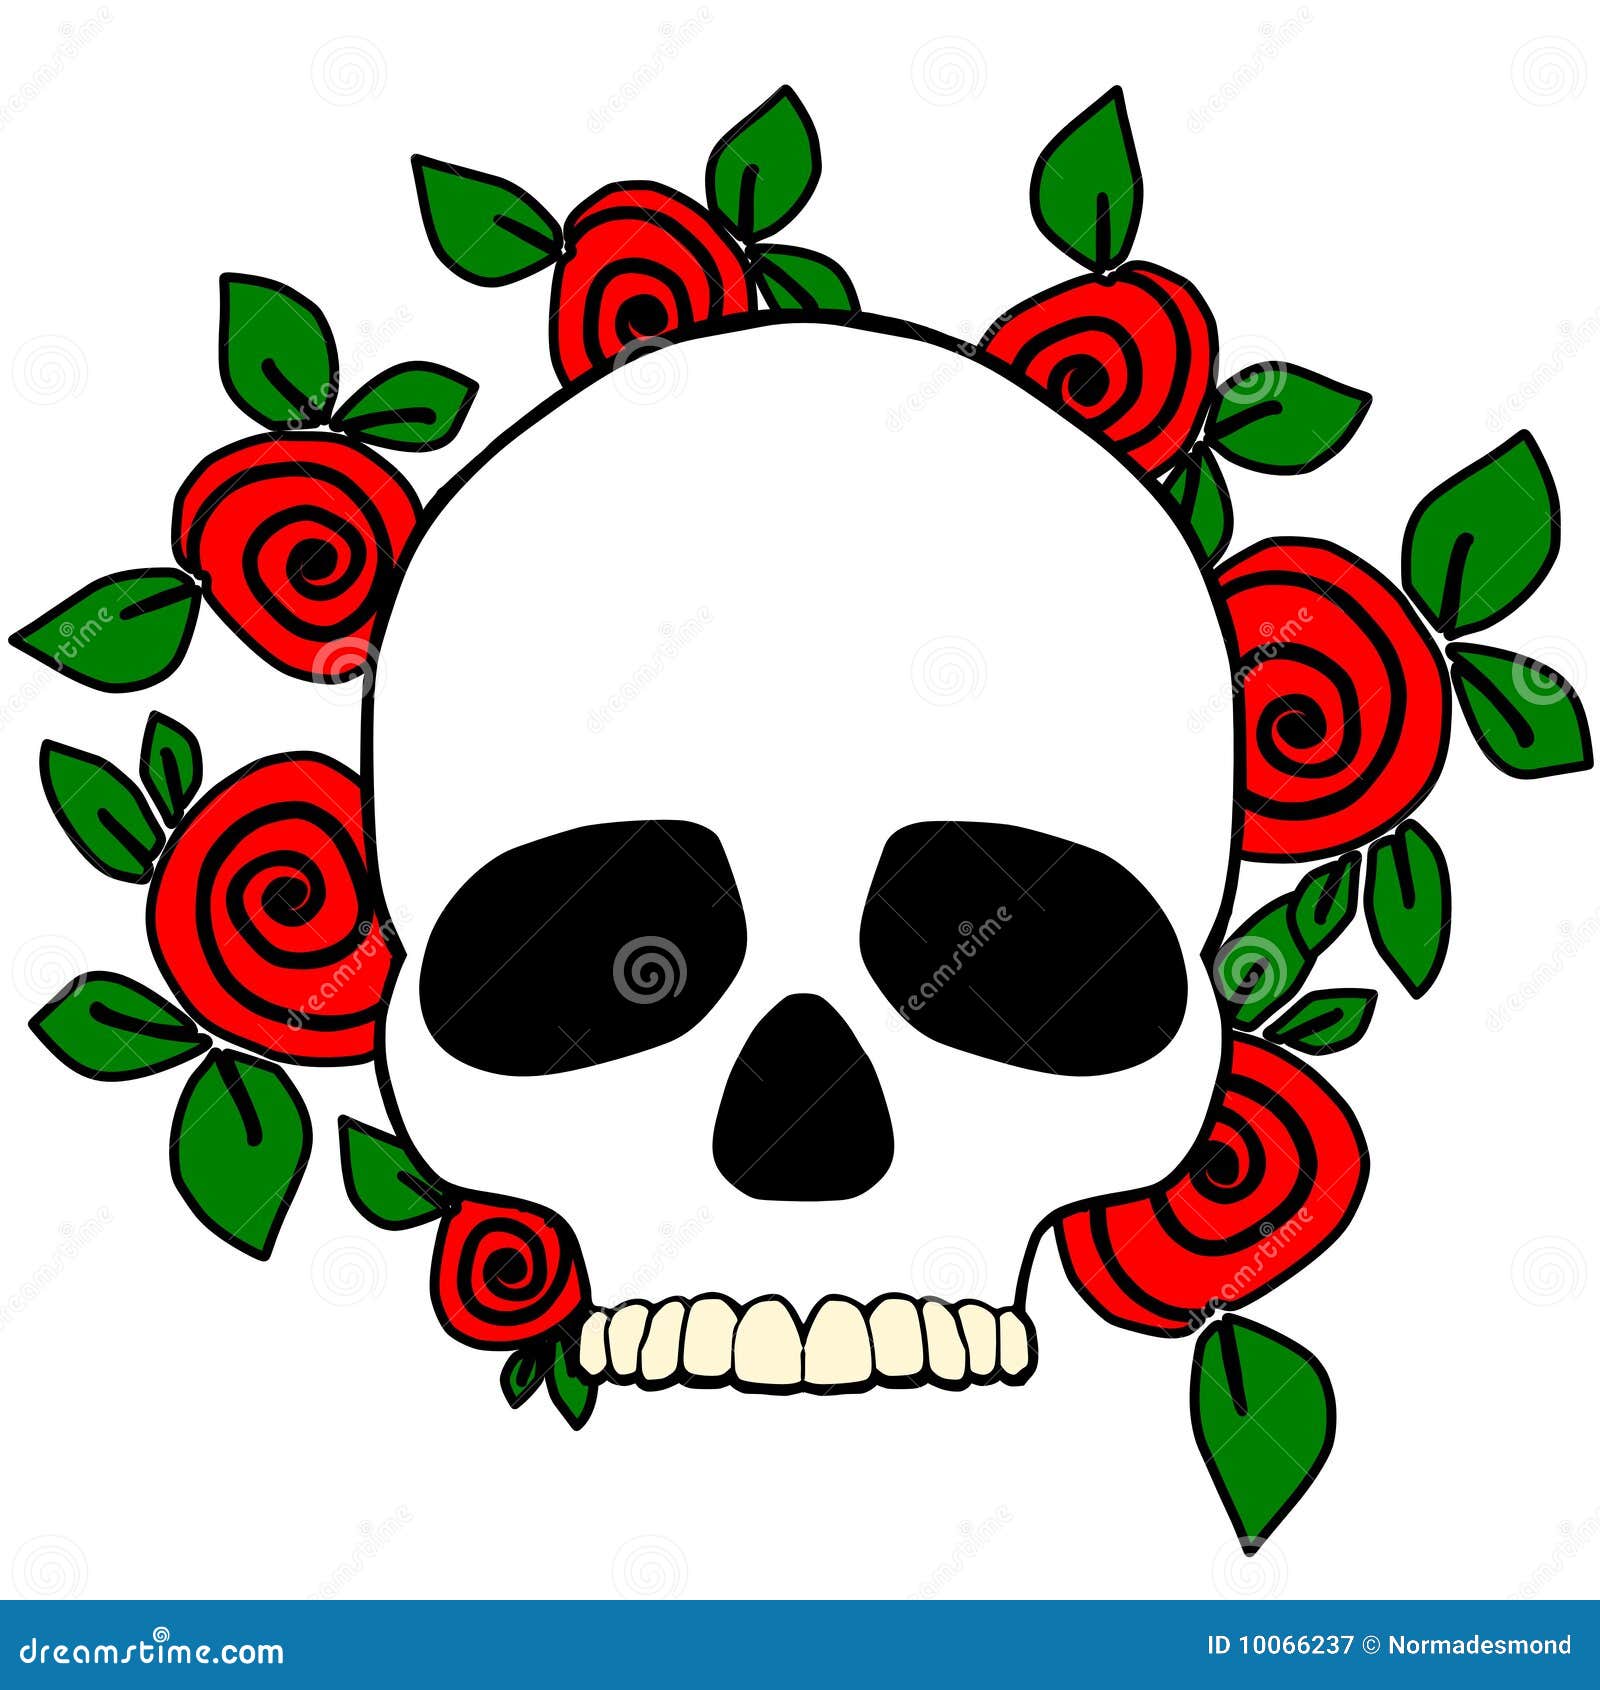 Skull stock illustration. Illustration of rose, dead - 10066237